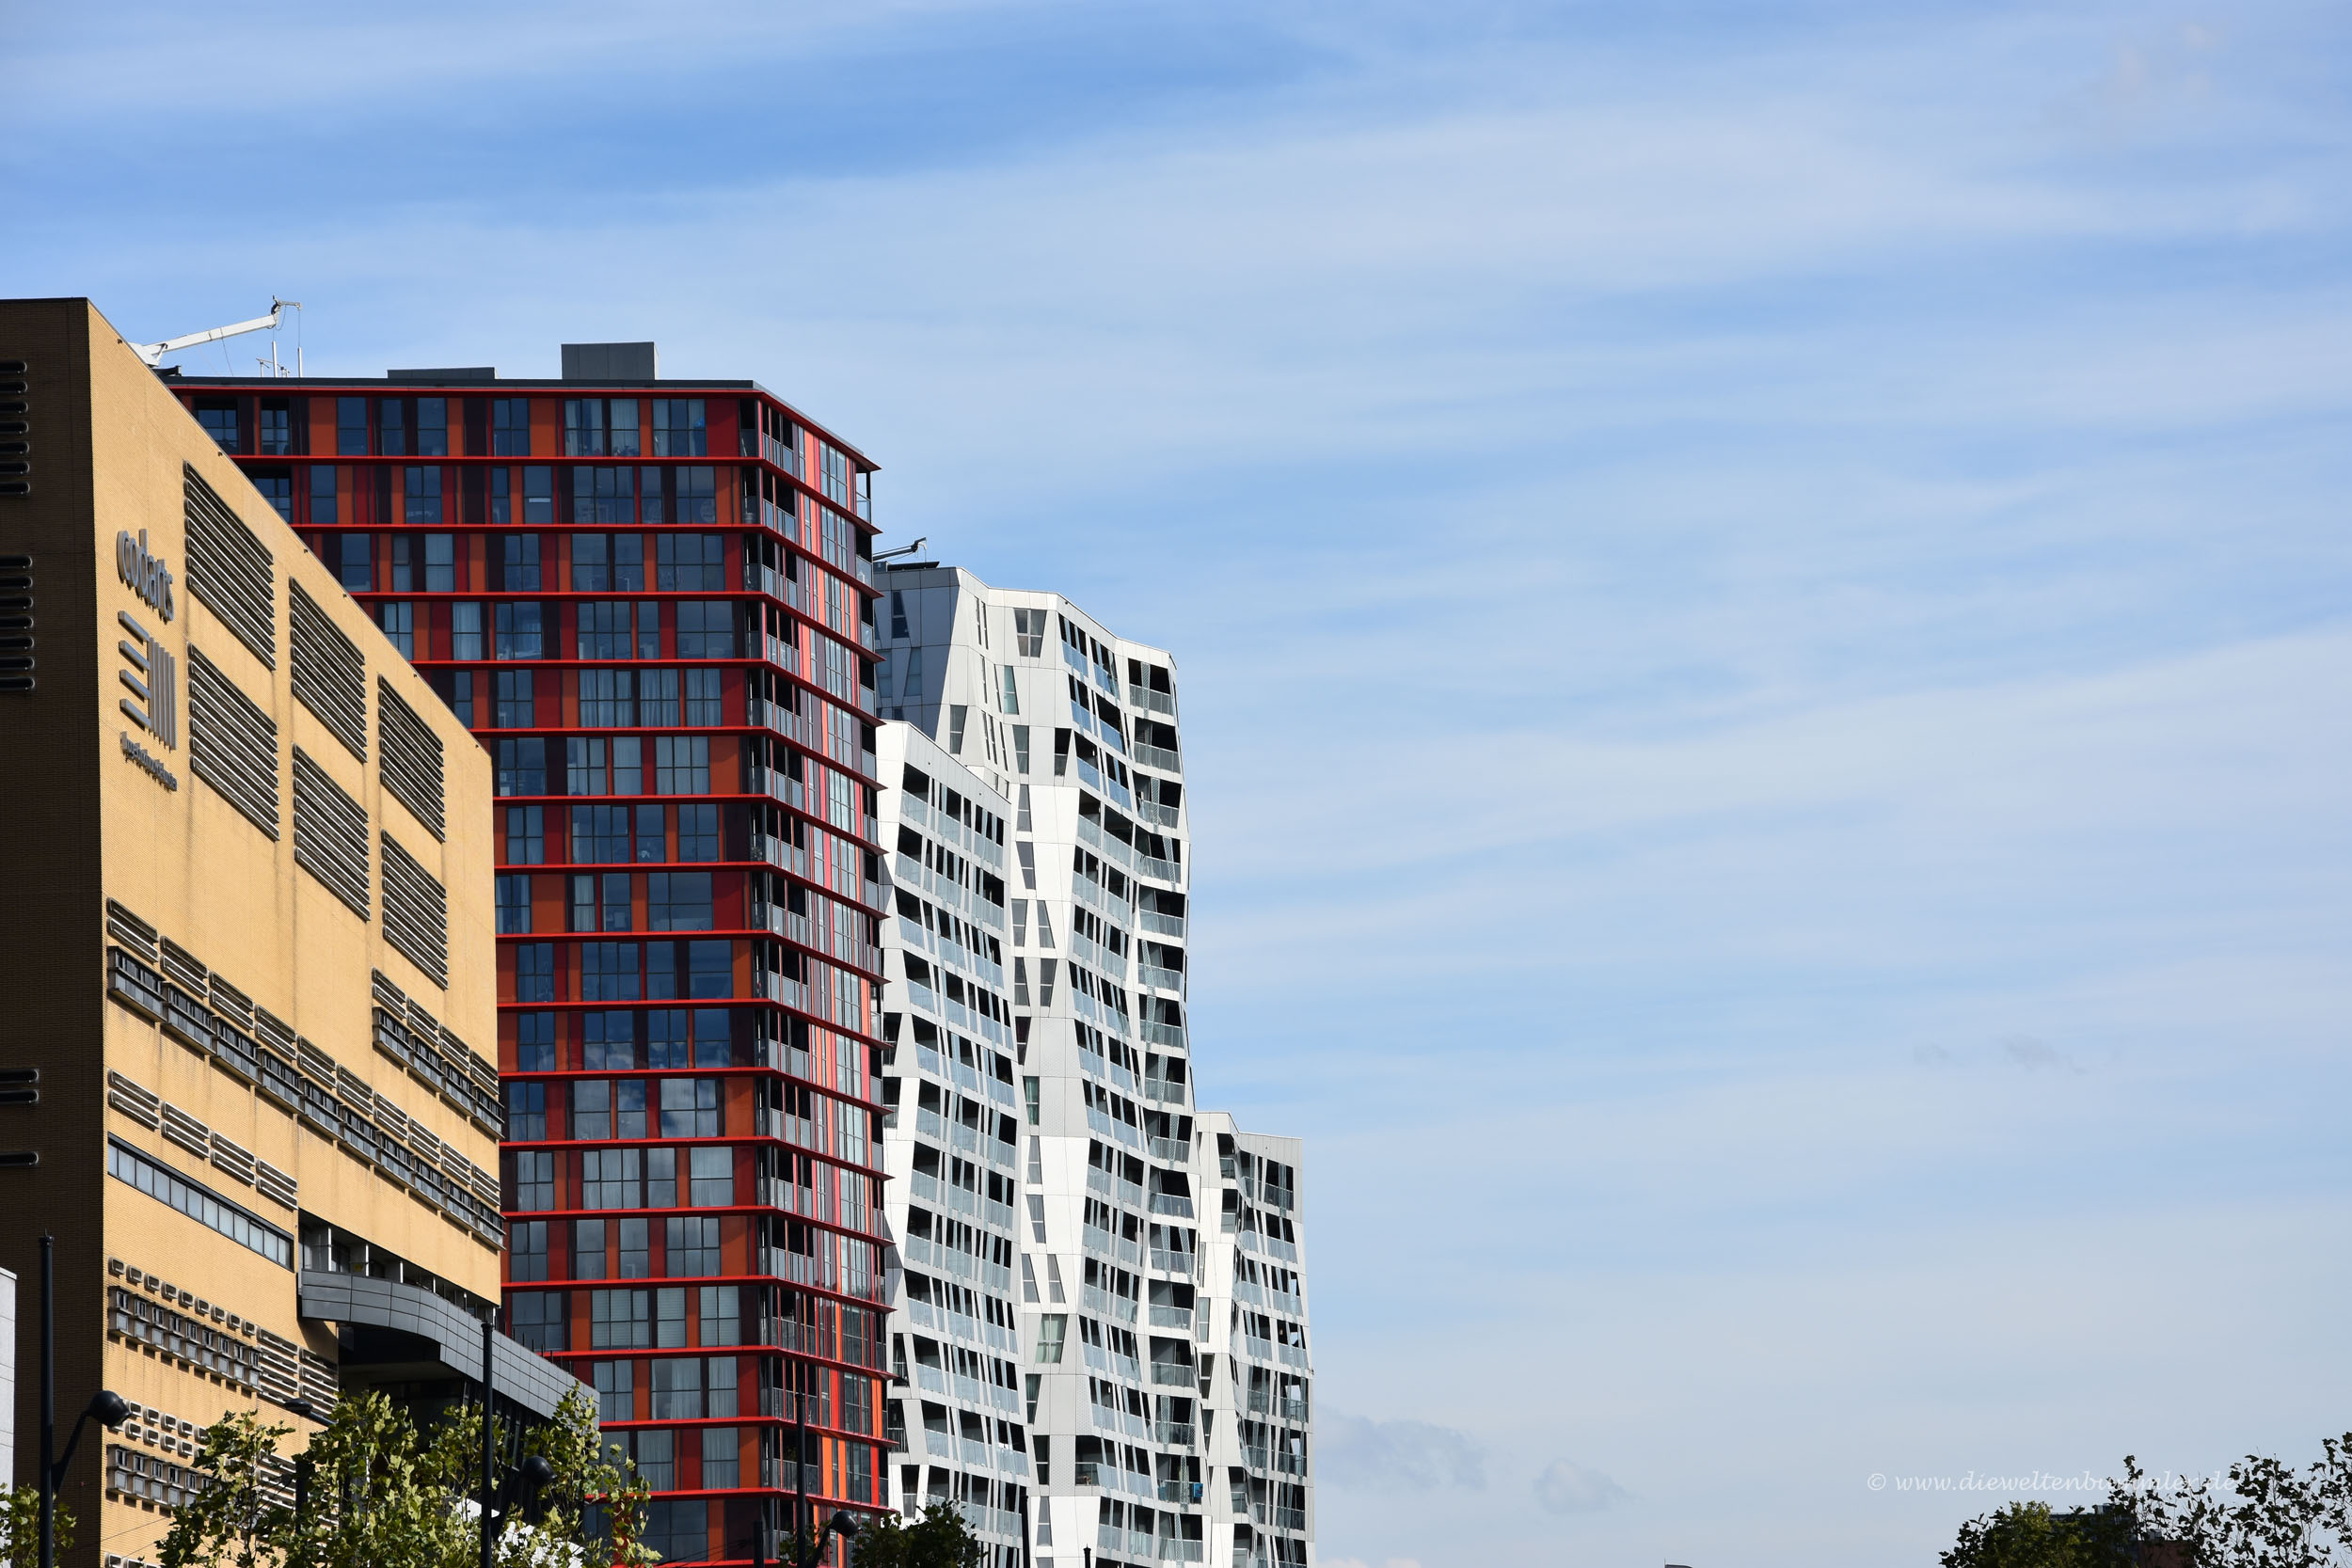 Interessante Architektur in Rotterdam